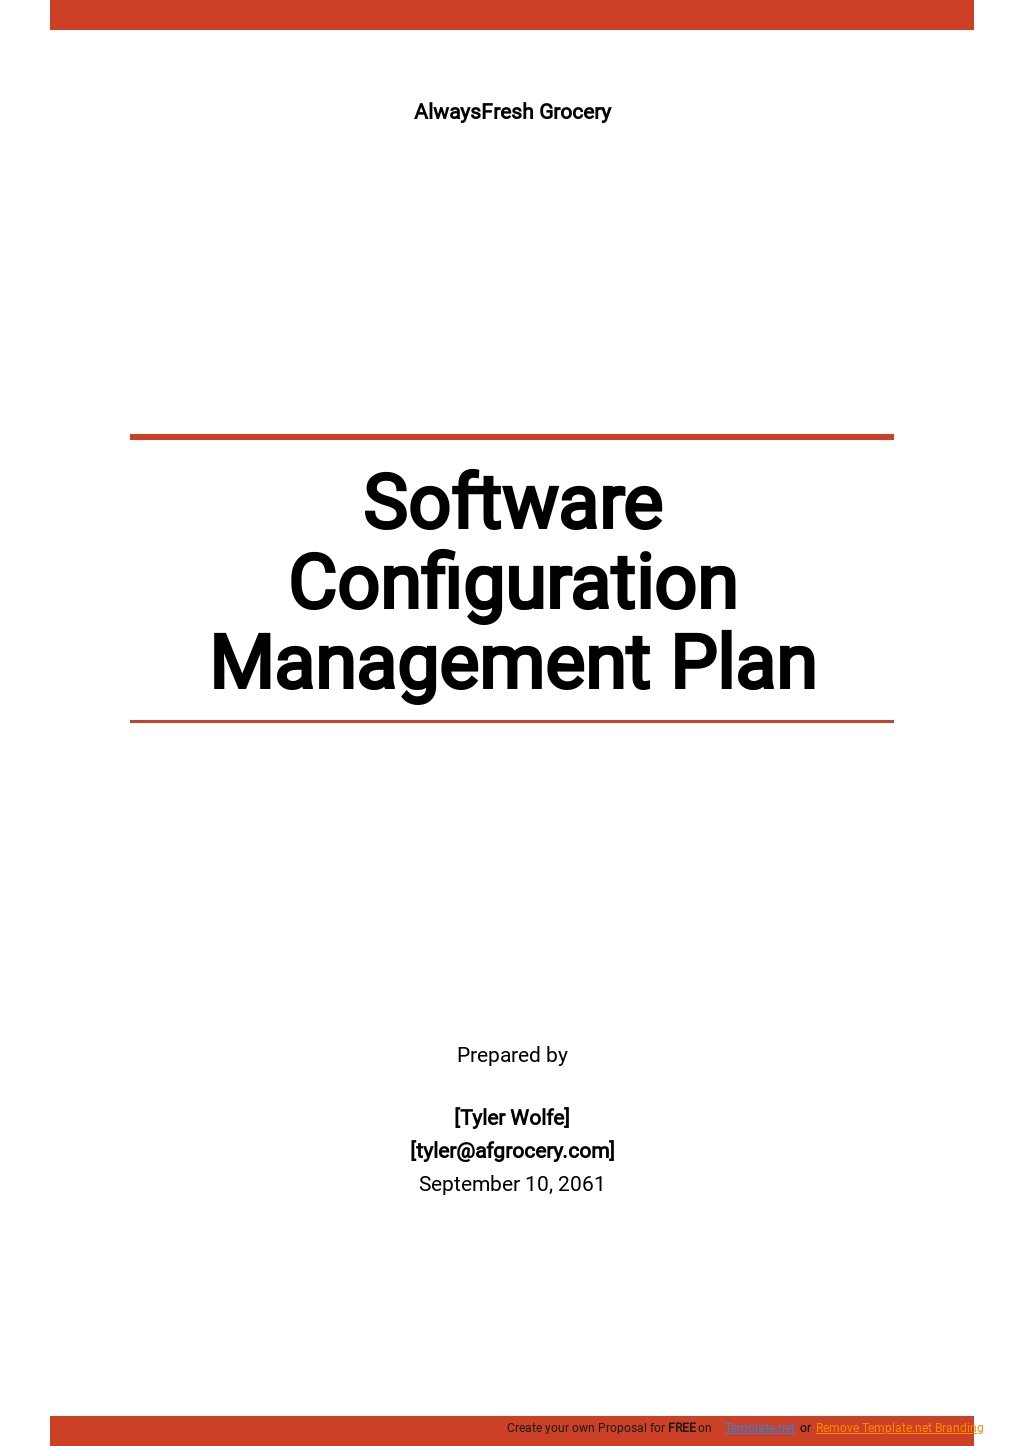 Configuration Management Plan Templates 9+ Docs, Free Downloads